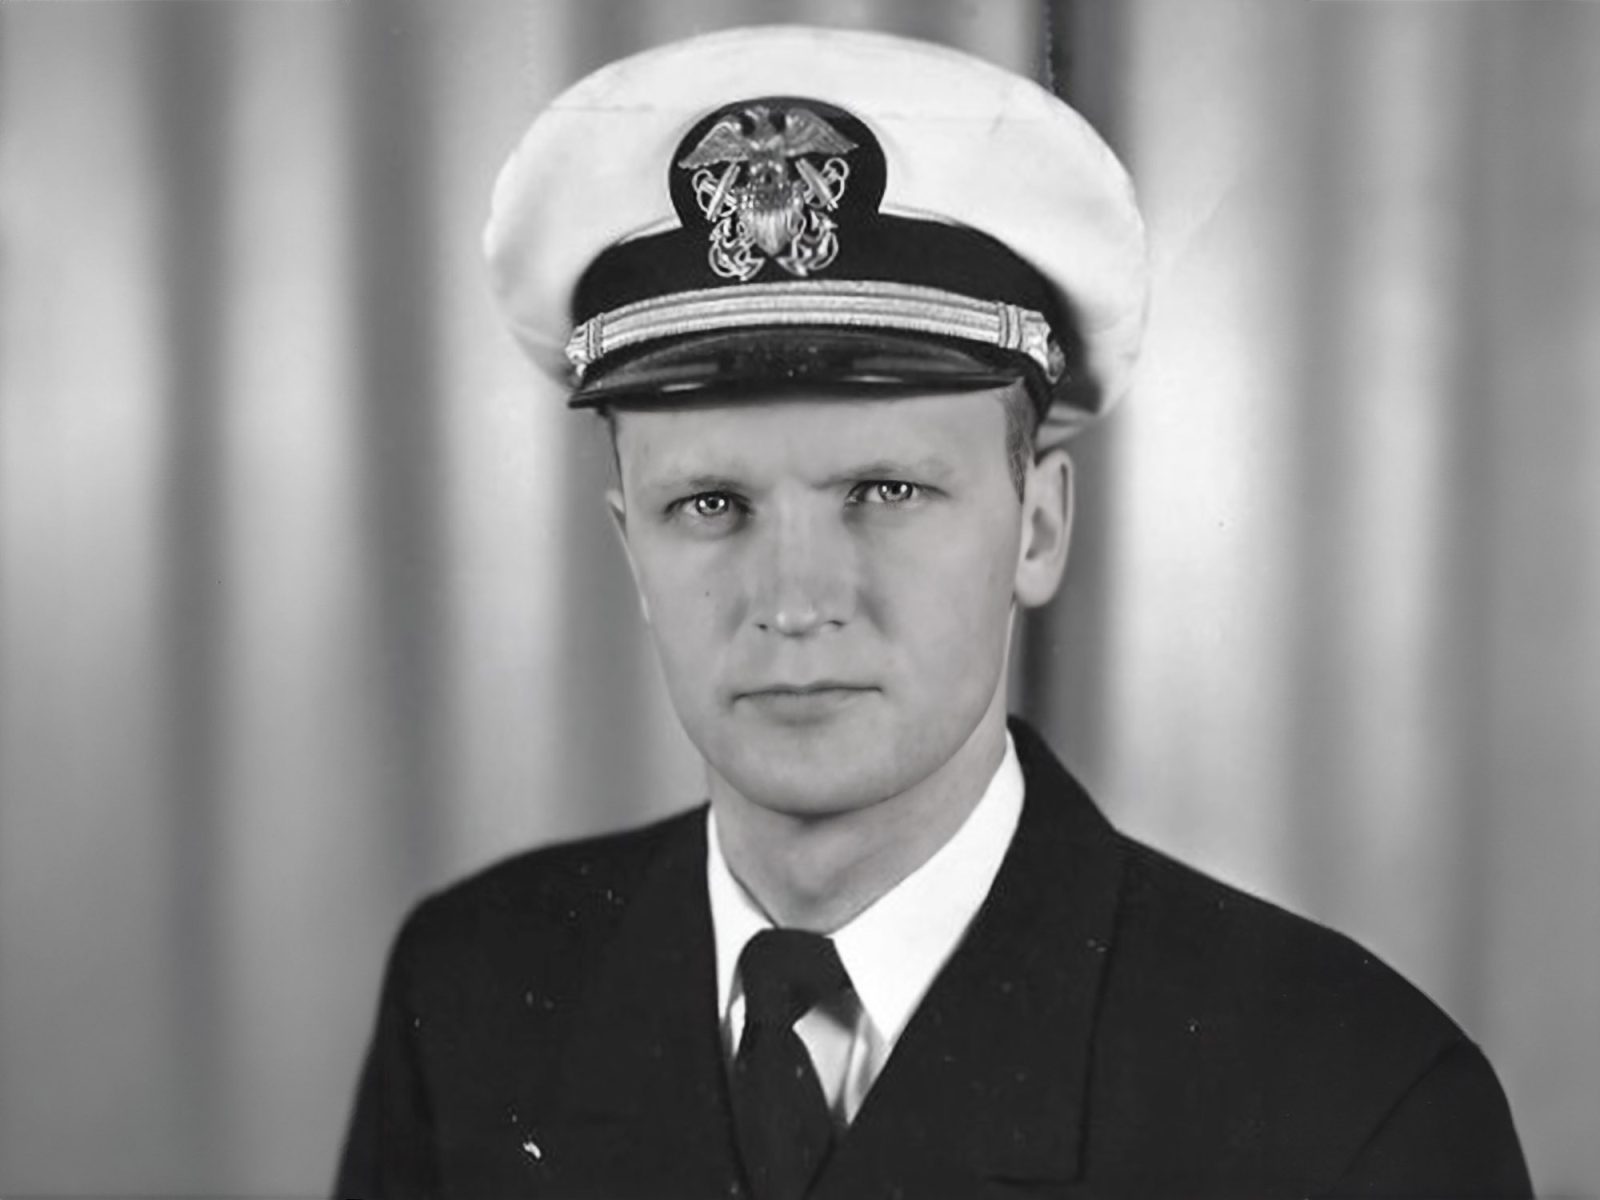 Russ deCastongrene in Naval Uniform